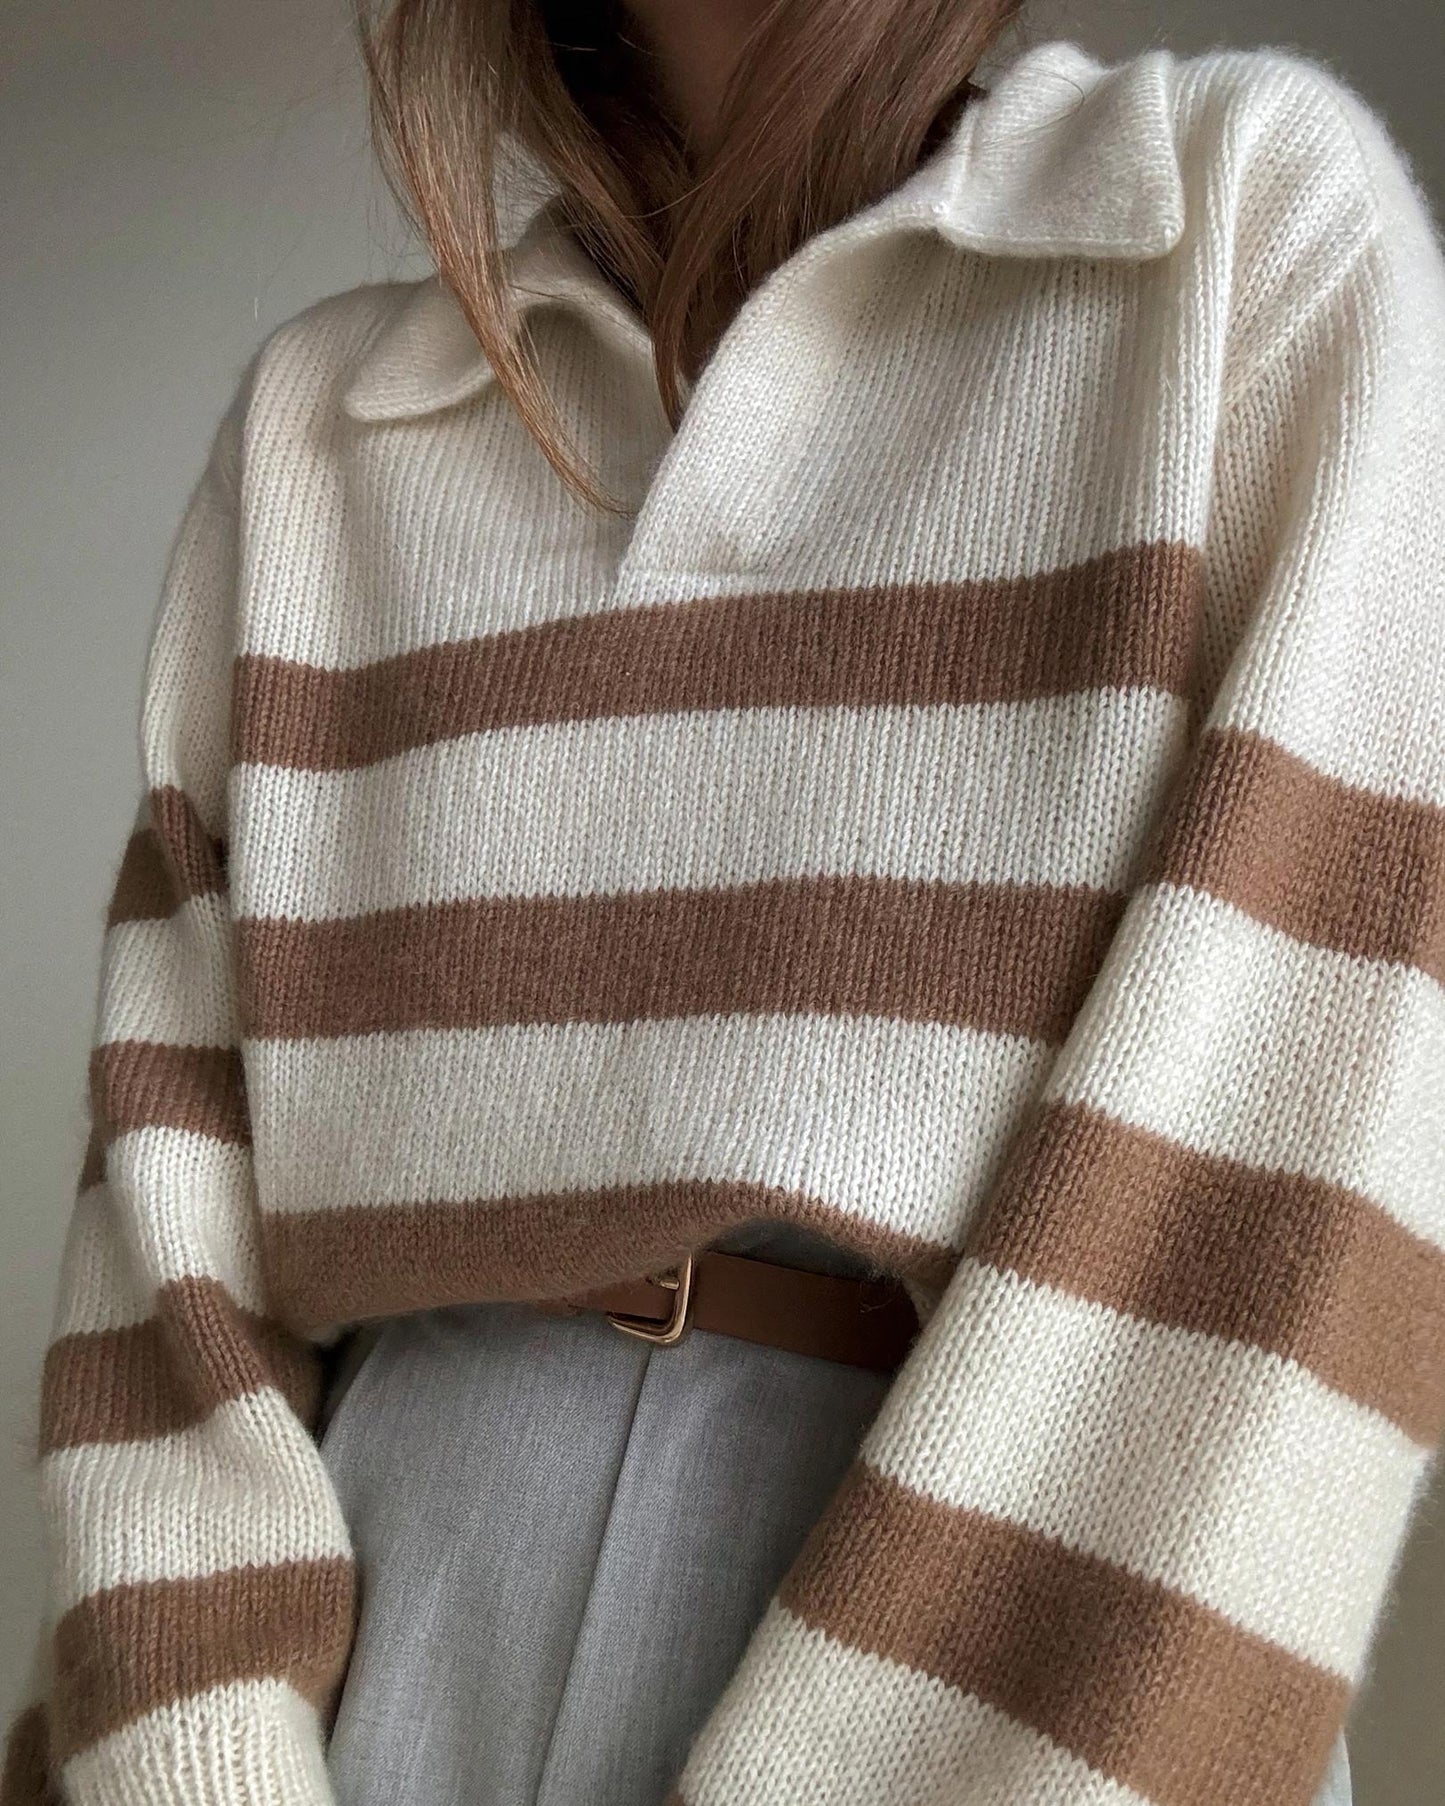 Wzór na sweter Charlie dla kobiet - sweter polo o luźnym fasonie Śliczny i estetyczny sweter dziany - zaawansowane instrukcje dziergania.